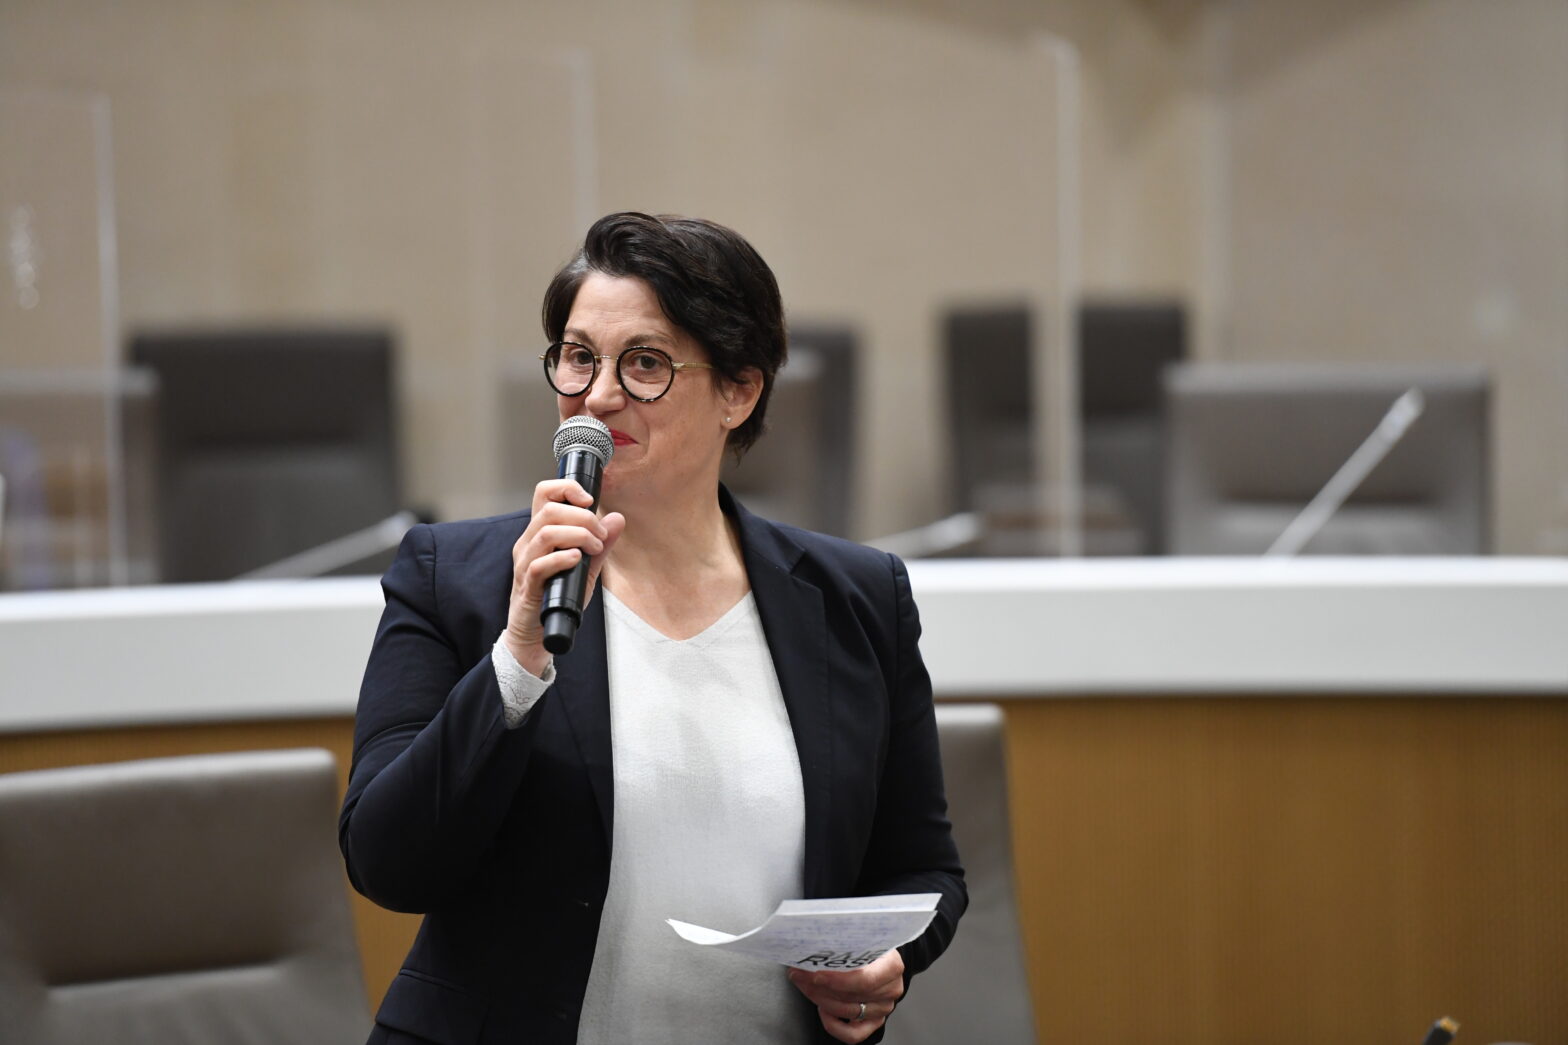 Photo de Nelly Fesseau, nouvelle directrice de l'Agence Erasmus+ France. Elle est debout, tenant un micro, et intervenant pendant une conférence.